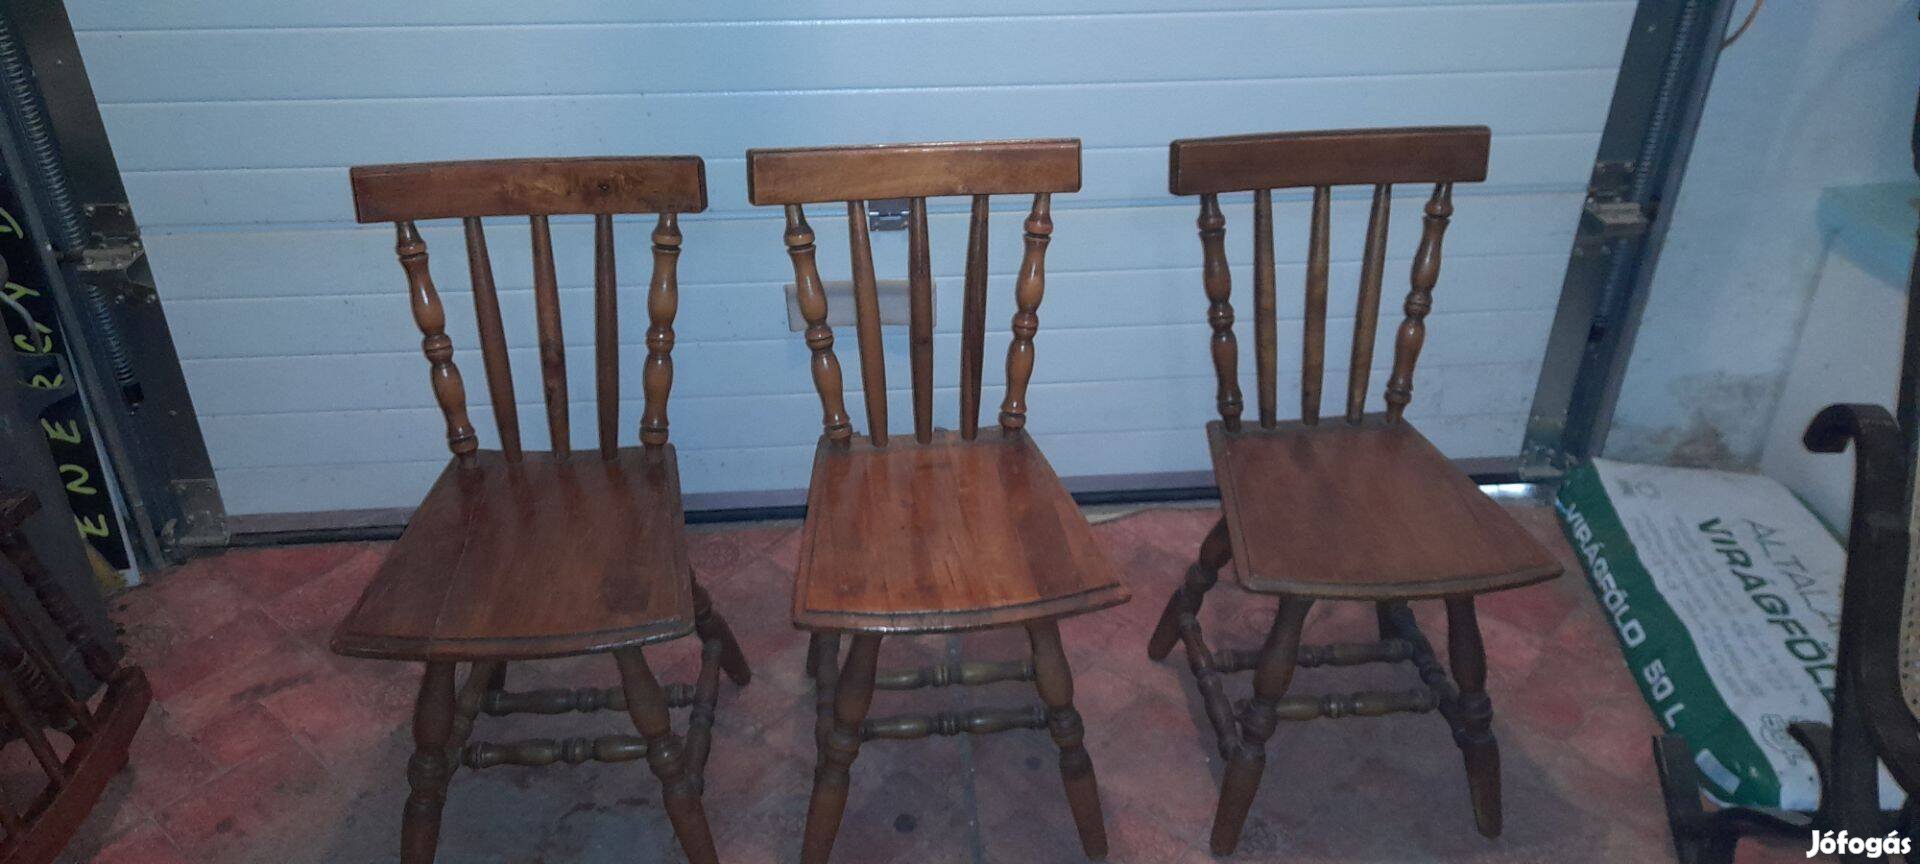 Eladó 3 db egyedileg készített szék